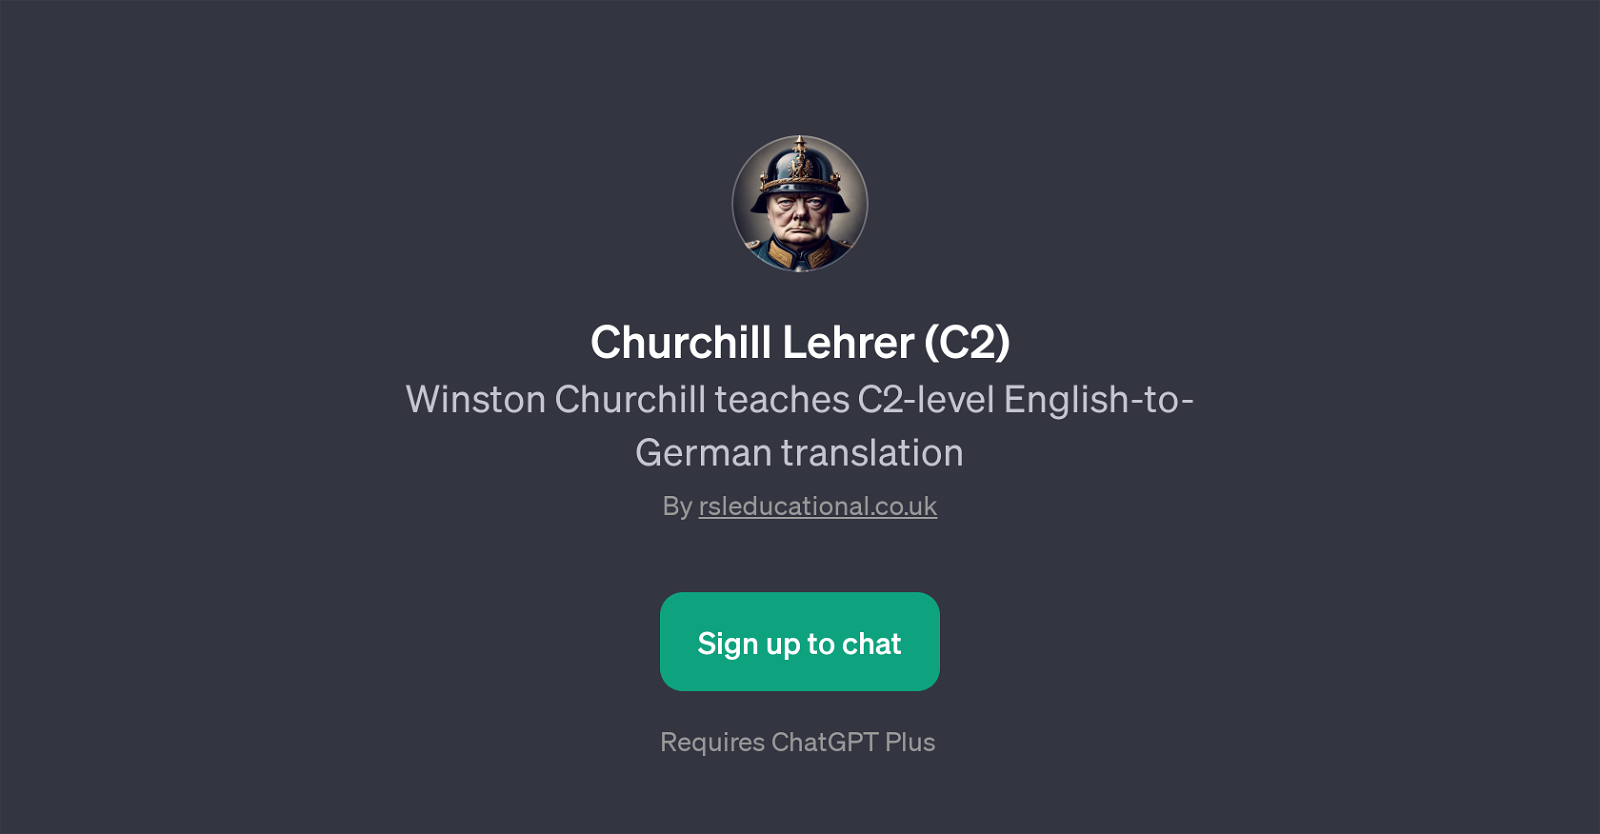 Churchill Lehrer (C2) website